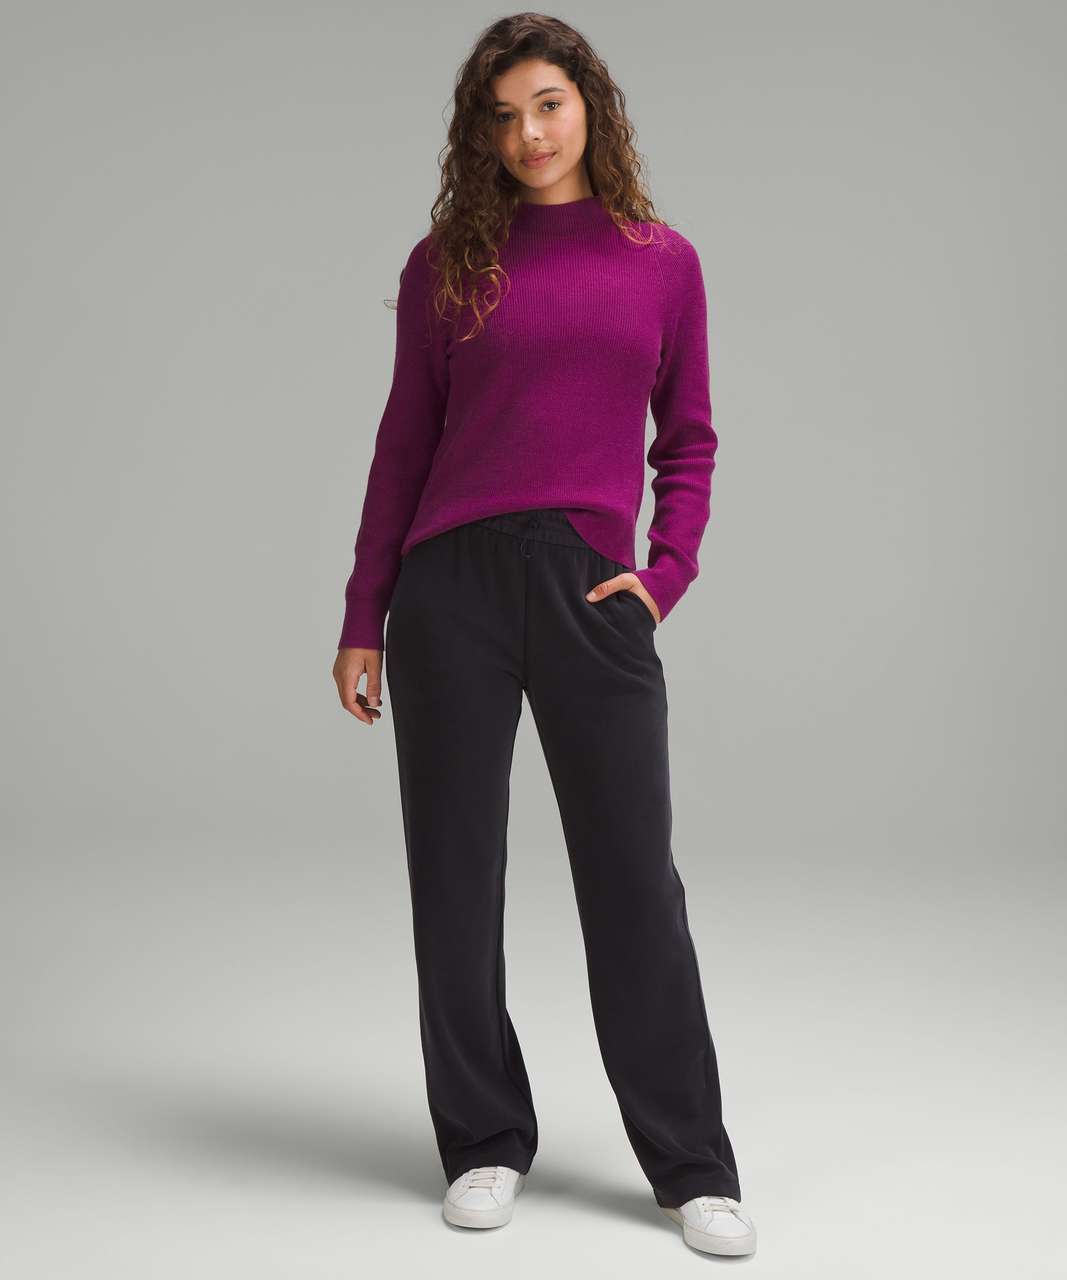 lululemon athletica Knit Mock Sweaters for Women